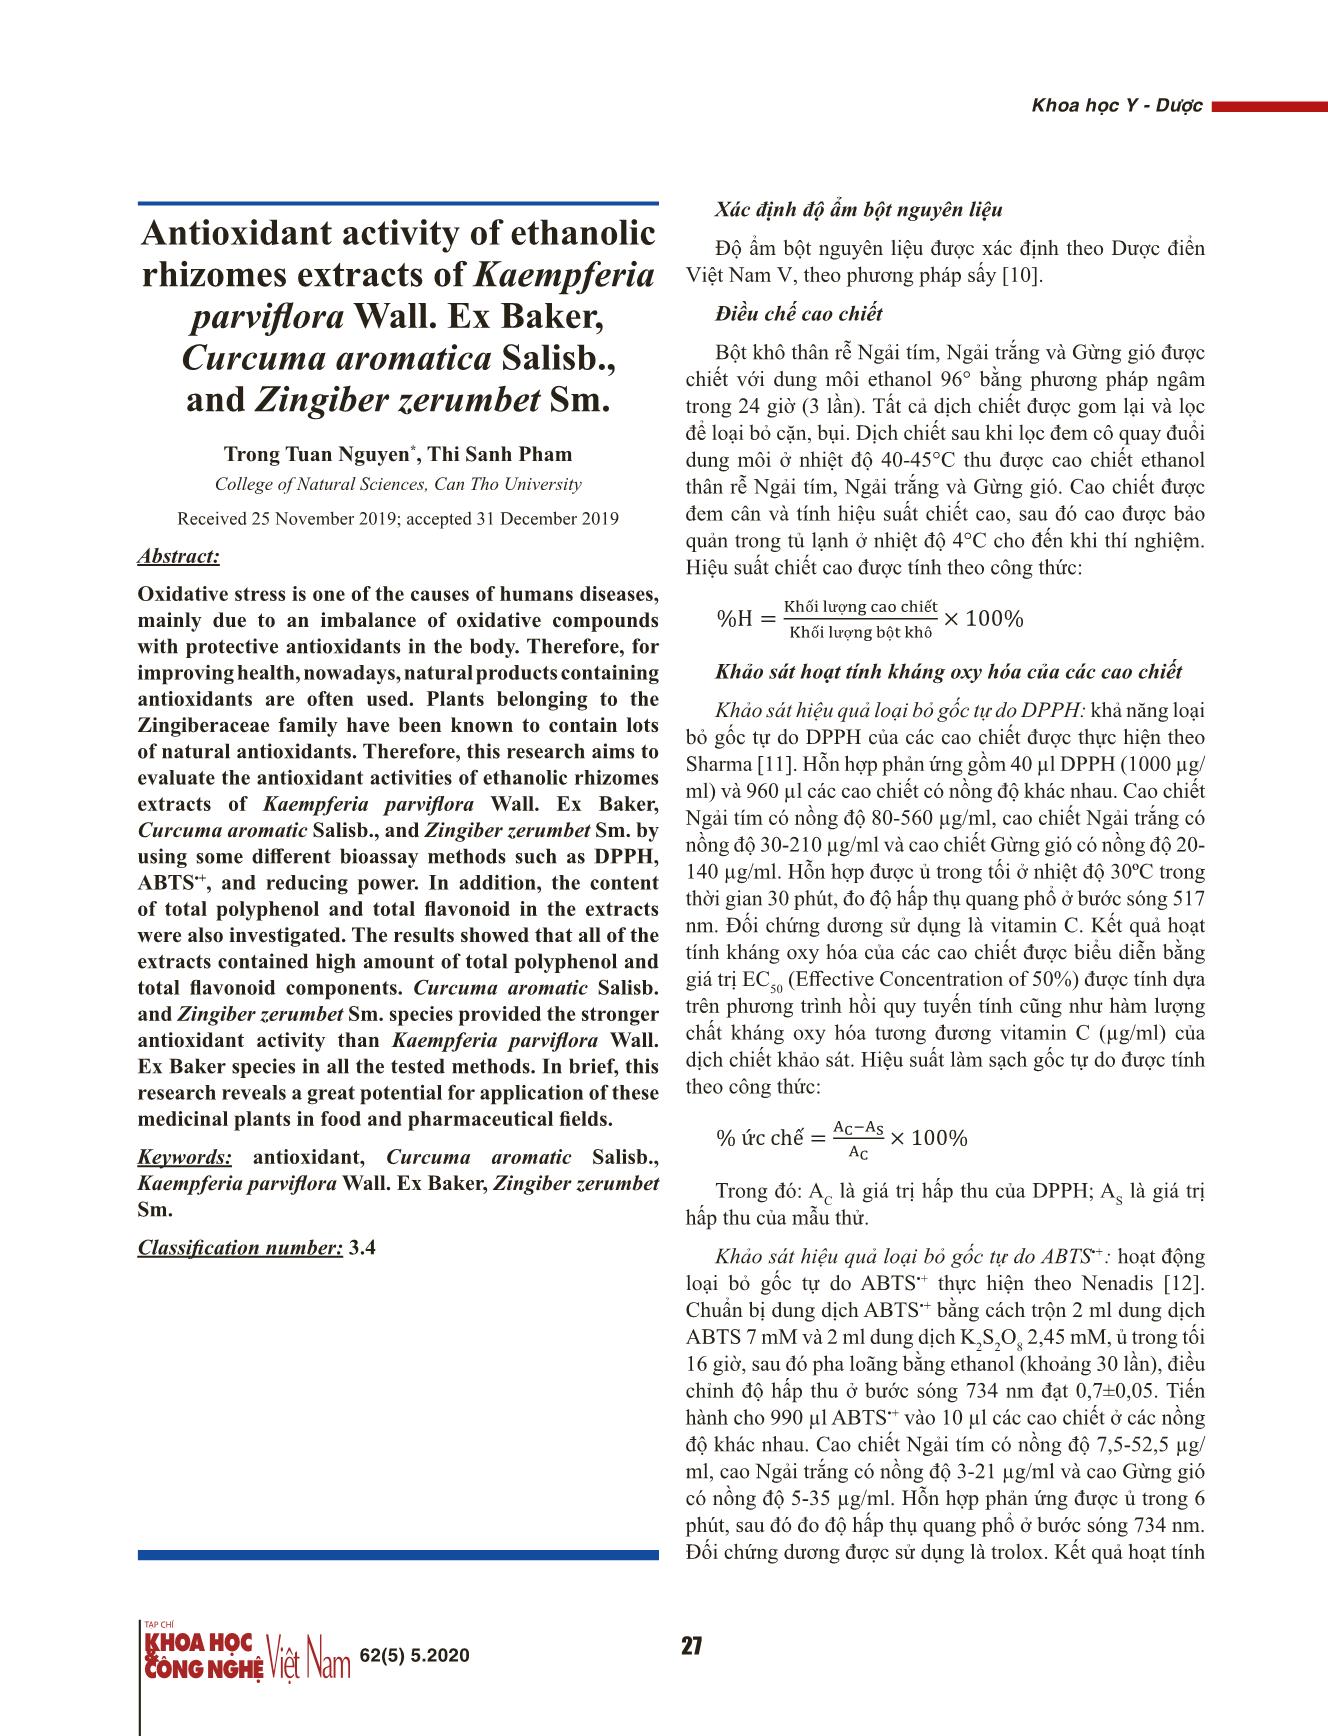 Hoạt tính kháng oxy hóa của cao chiết ethanol thân rễ Ngải tím (Kaempferia parviflora Wall. Ex Baker), Ngải trắng (Curcuma aromatica Salisb.), Gừng gió (Zingiber zerumbet Sm.) trang 2